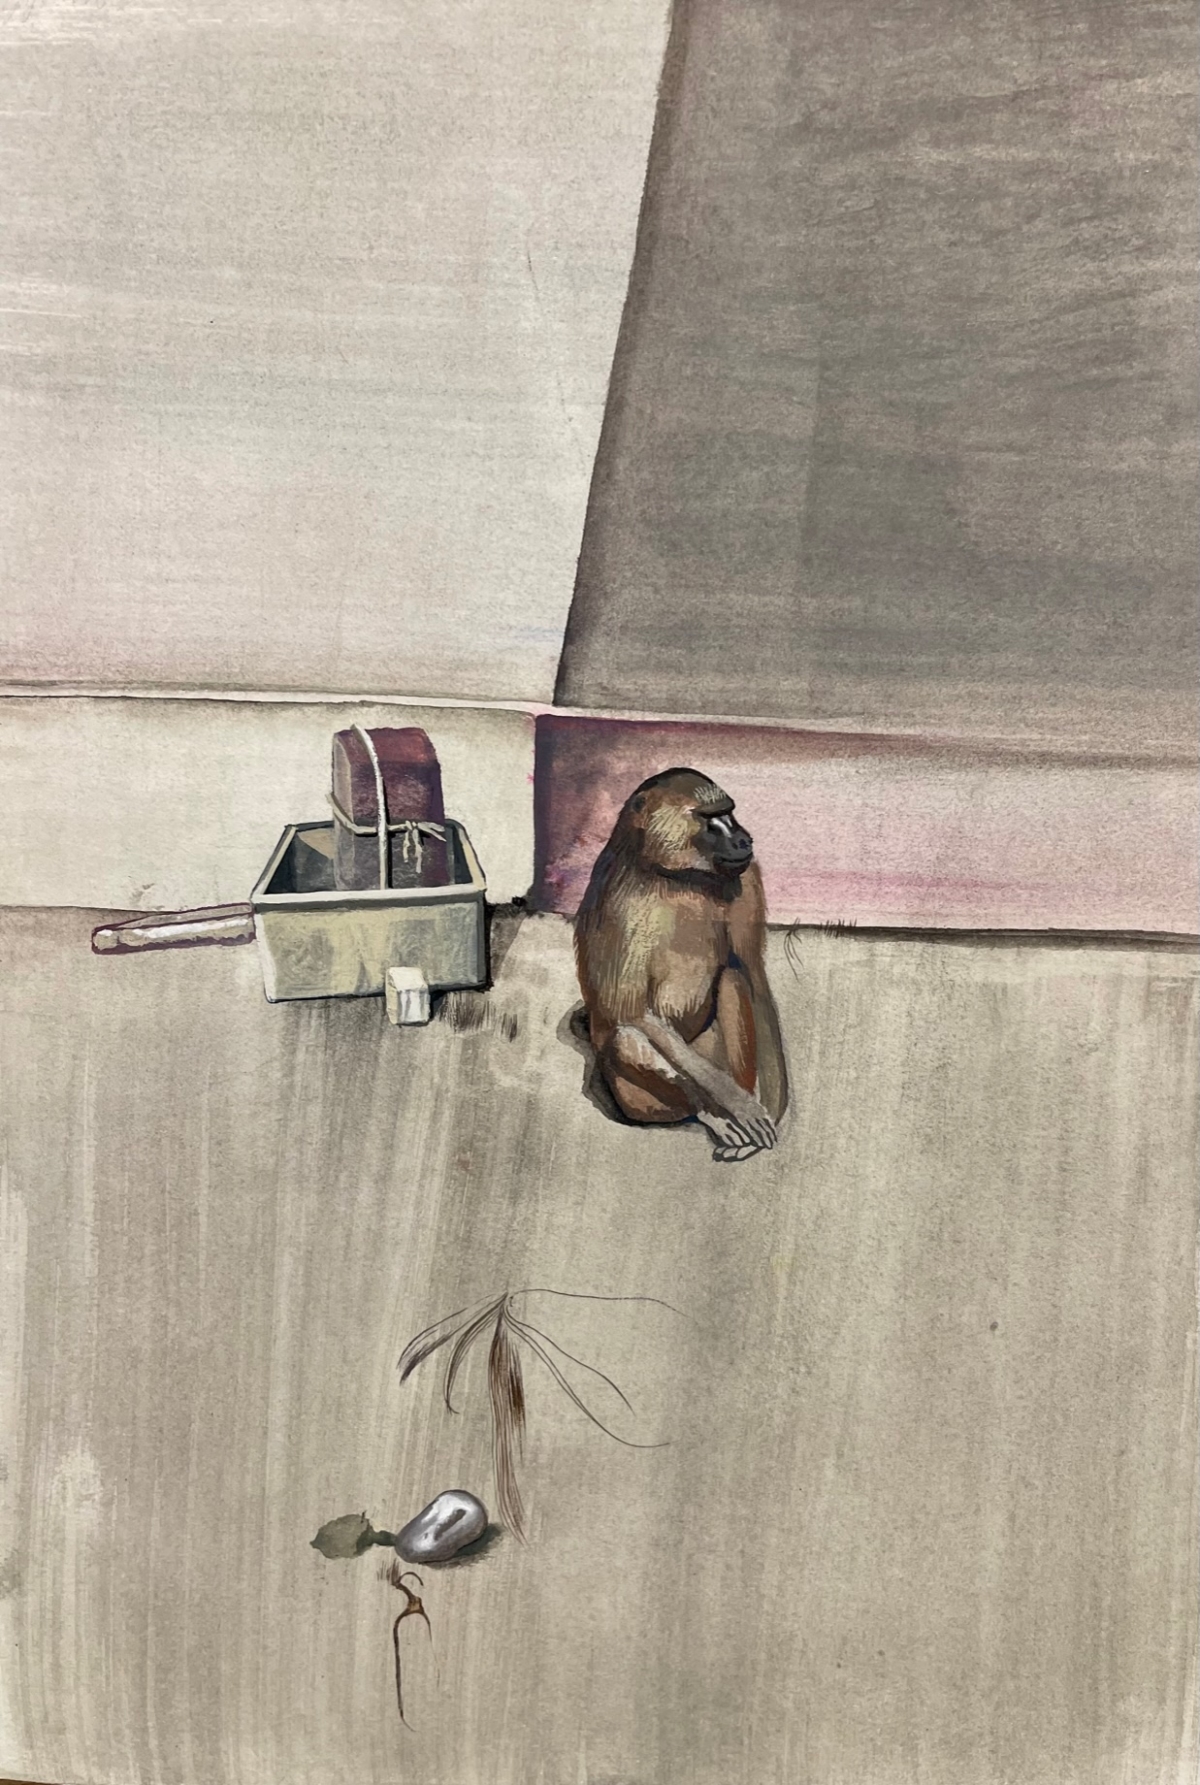 le singe aux boites, 2020 peinture détrempe sur papier marouflé 30 x 21 cm DP251 ©Denis Polge 